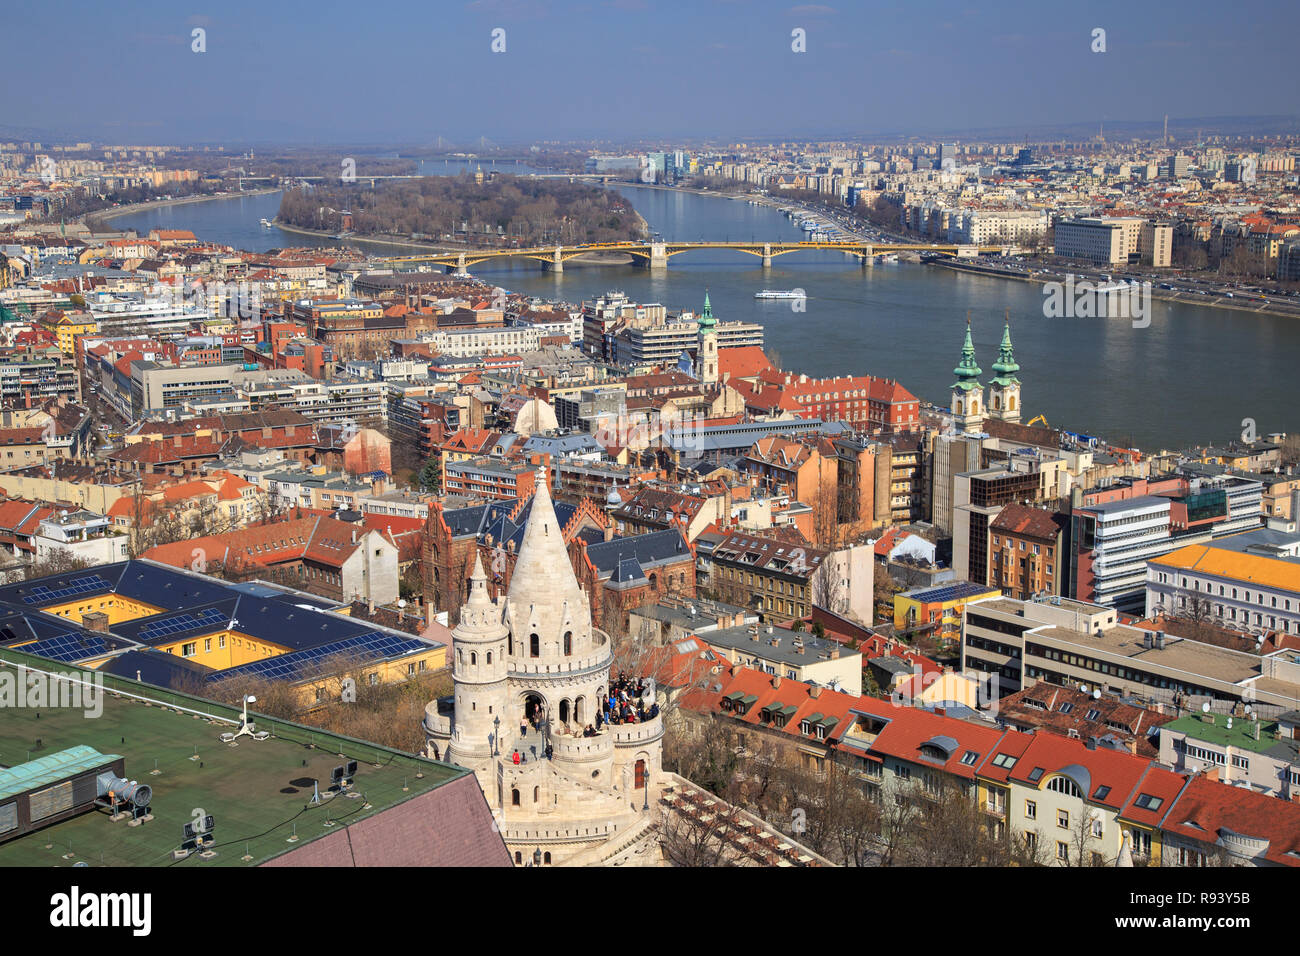 Ein Blick auf Budapest, am 8. Juni in Budapest, Ungarn, 2013. Budapest durch die Menge der Bevölkerung nimmt den neunten Platz in der Europäischen Union Stockfoto